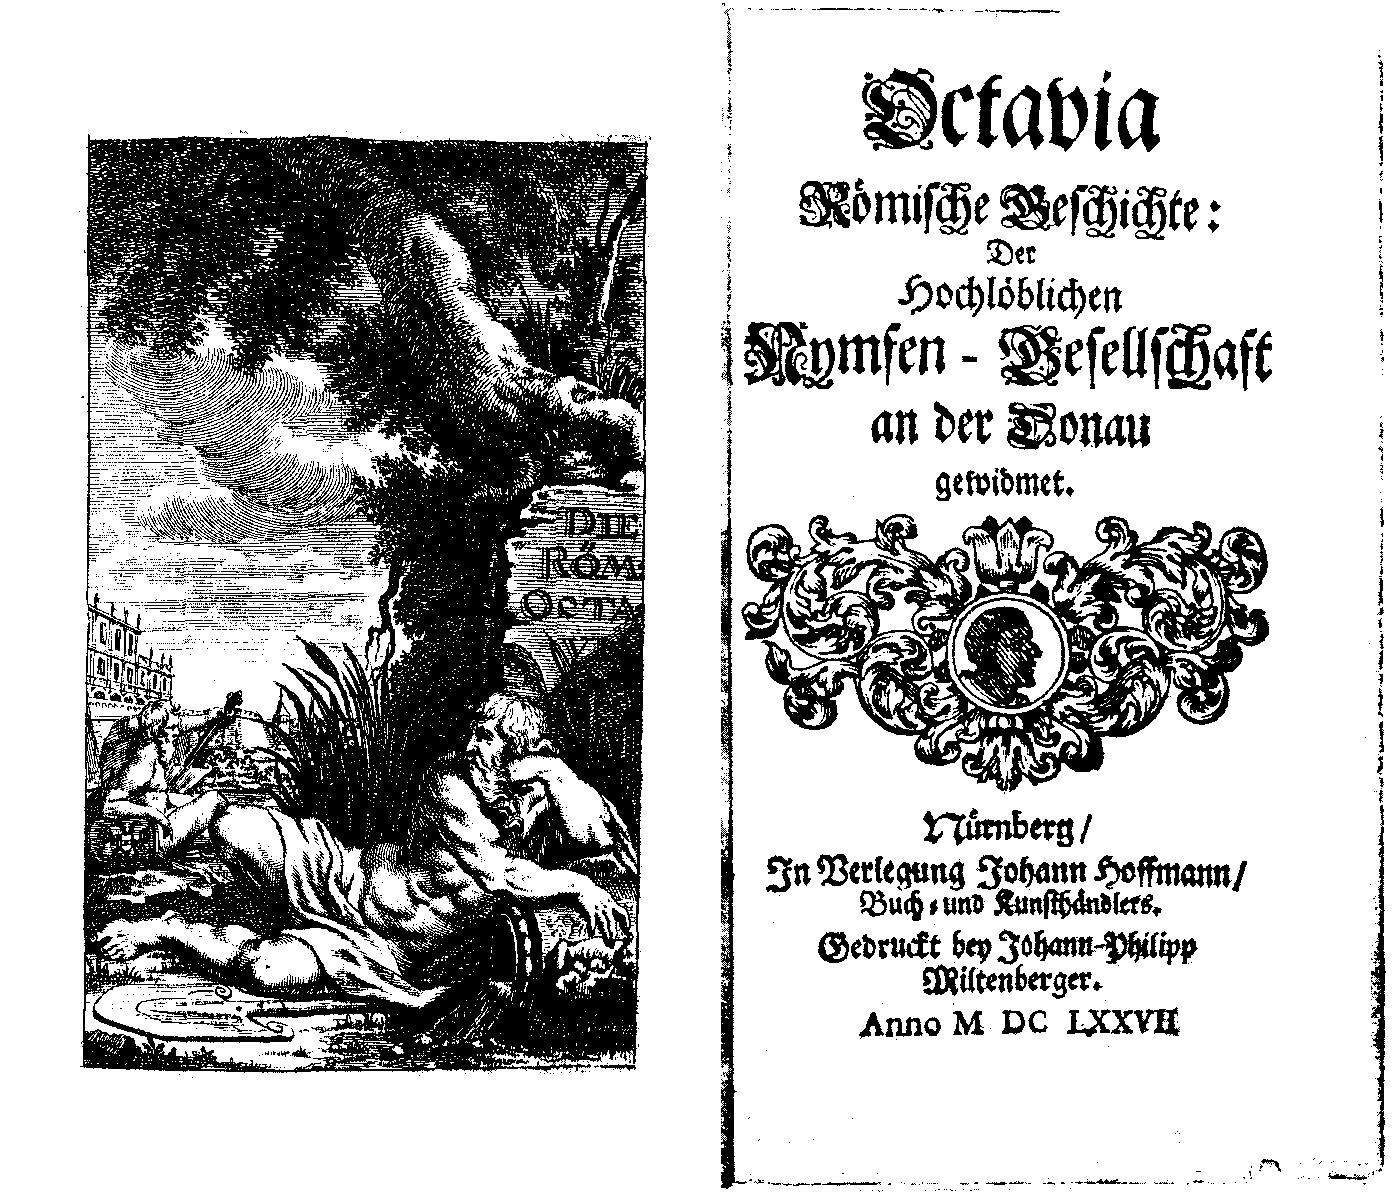 [Anton Ulrich Herzog zu Braunschweig und Lüneburg,] Octavia römische Geschichte [vol. 1] (Nürnberg: J. Hoffmann, 1677).